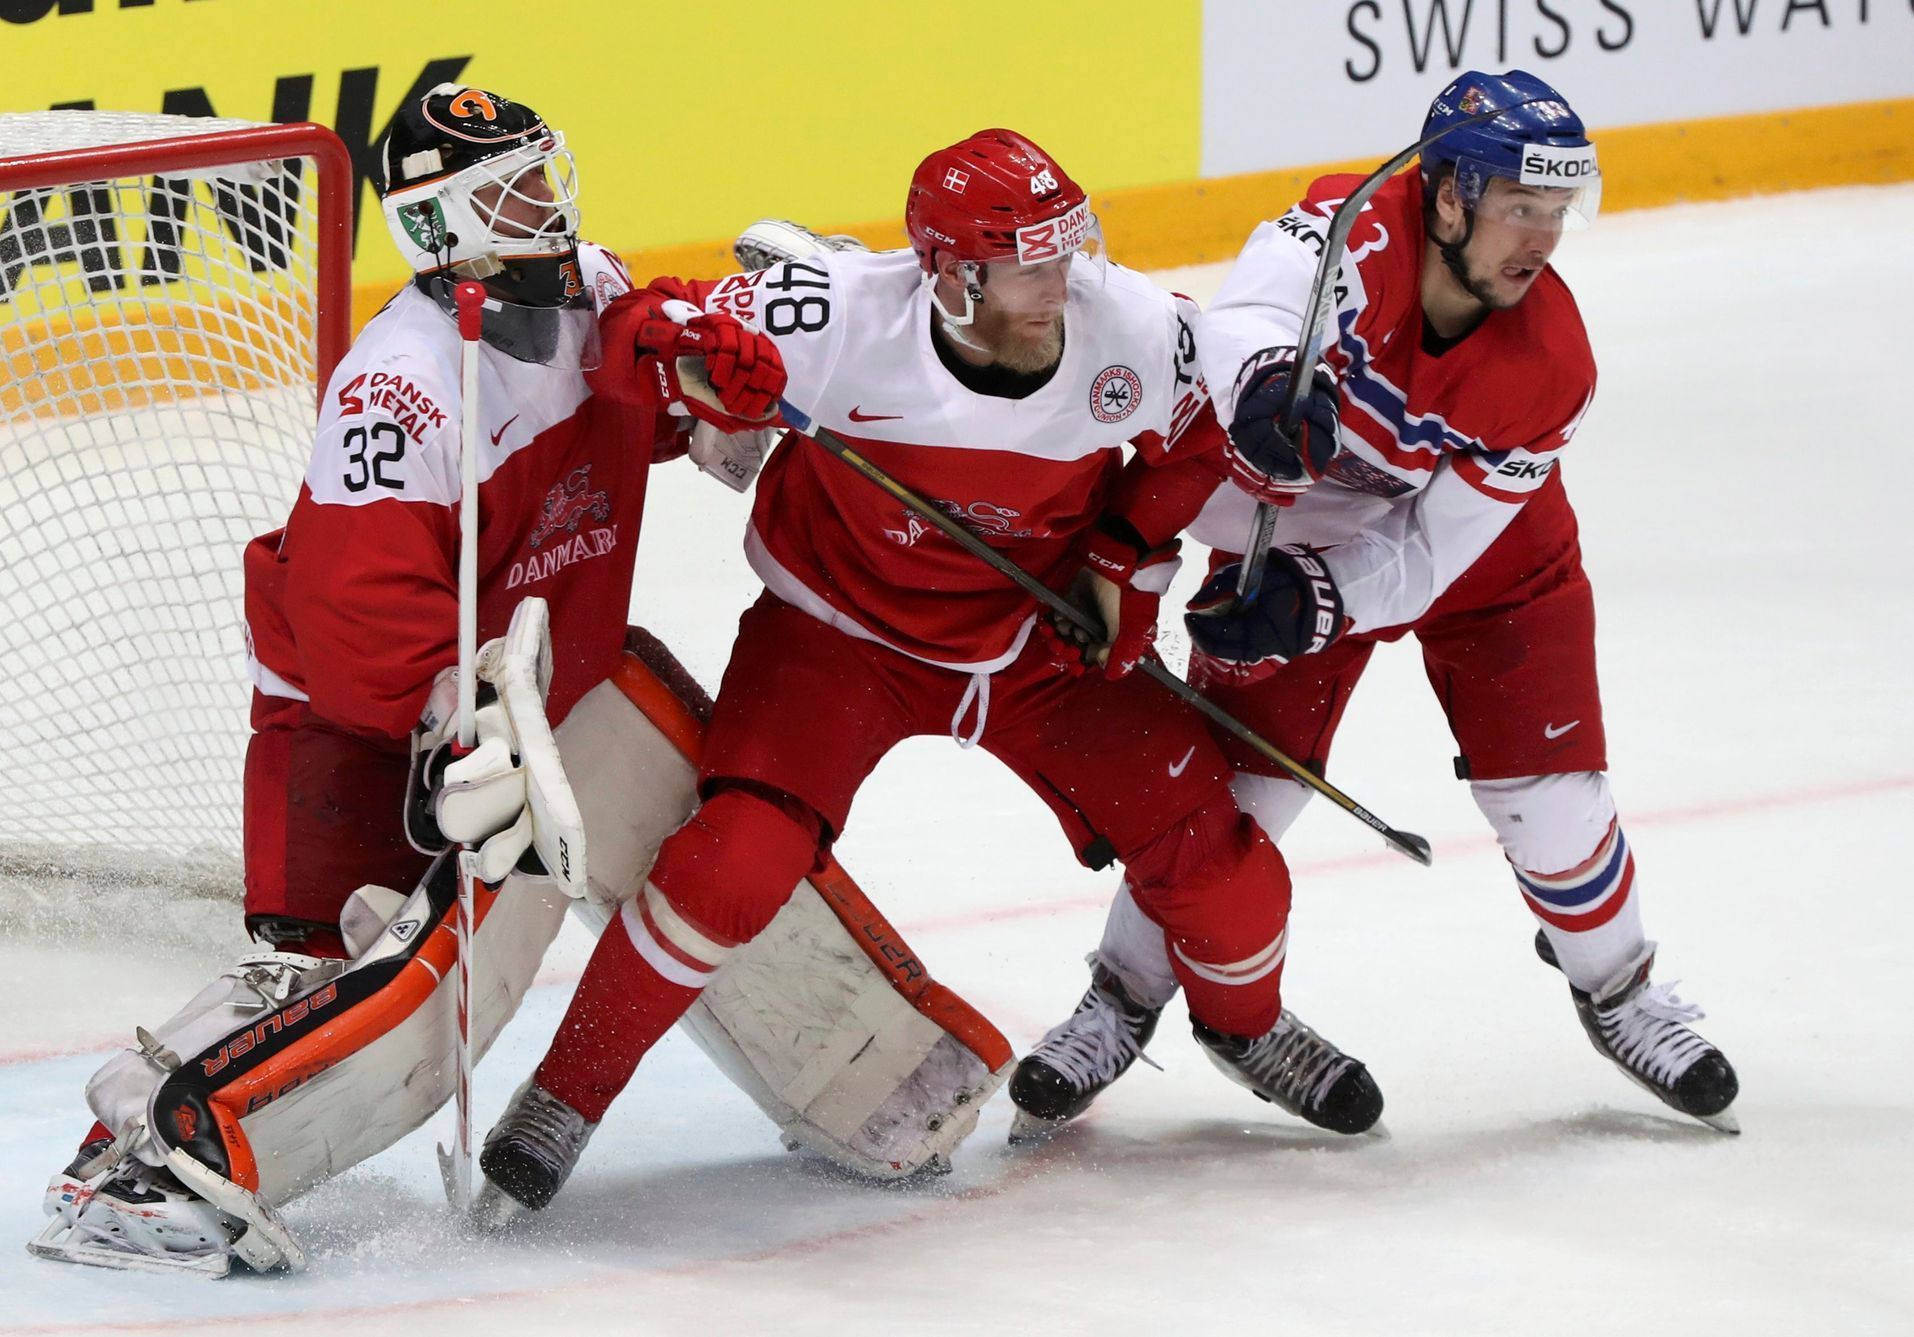 Dánsko - Česko, MS v hokeji 2016